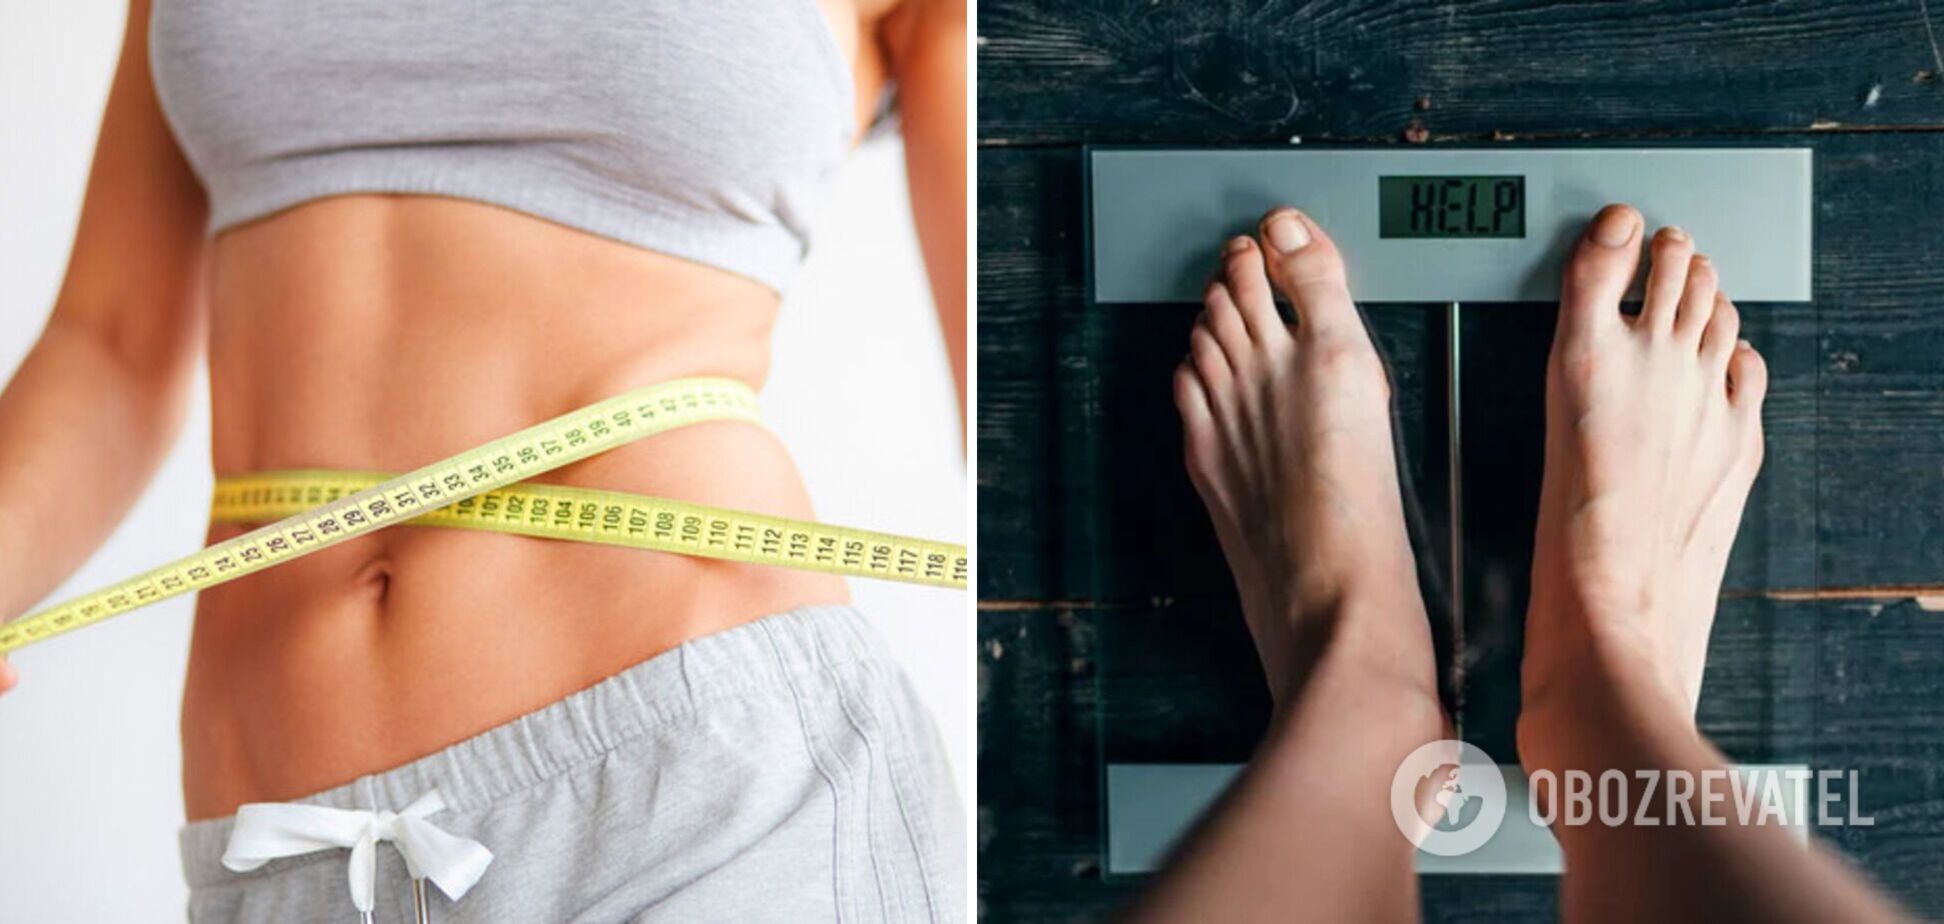 42-річна жінка скинула 45 кг без виснажливих дієт. Фото дивовижного перевтілення